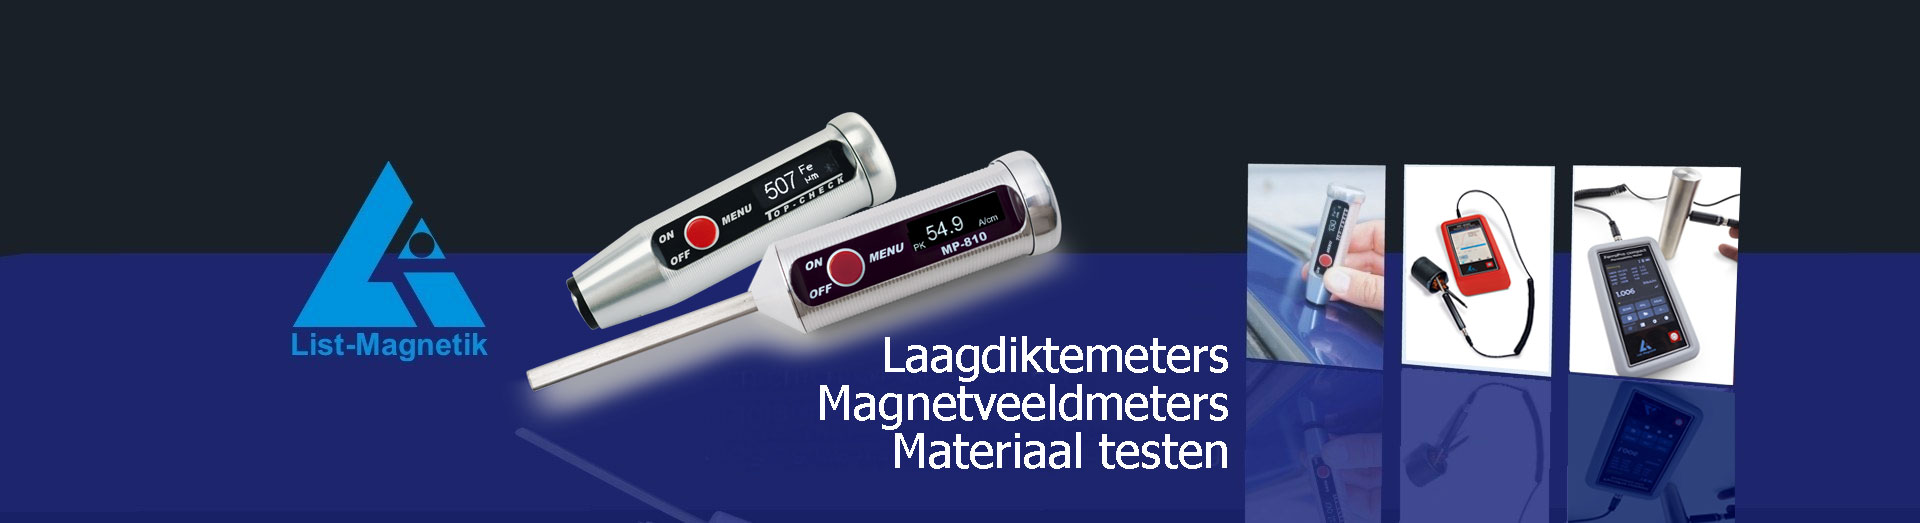 List-Magnetik GmbH
Laagdiktemeters
Magneetveldmeters / Gaussmeters
Permeabiliteitmeters
Magnetiseer- en demagnetiseersystemen